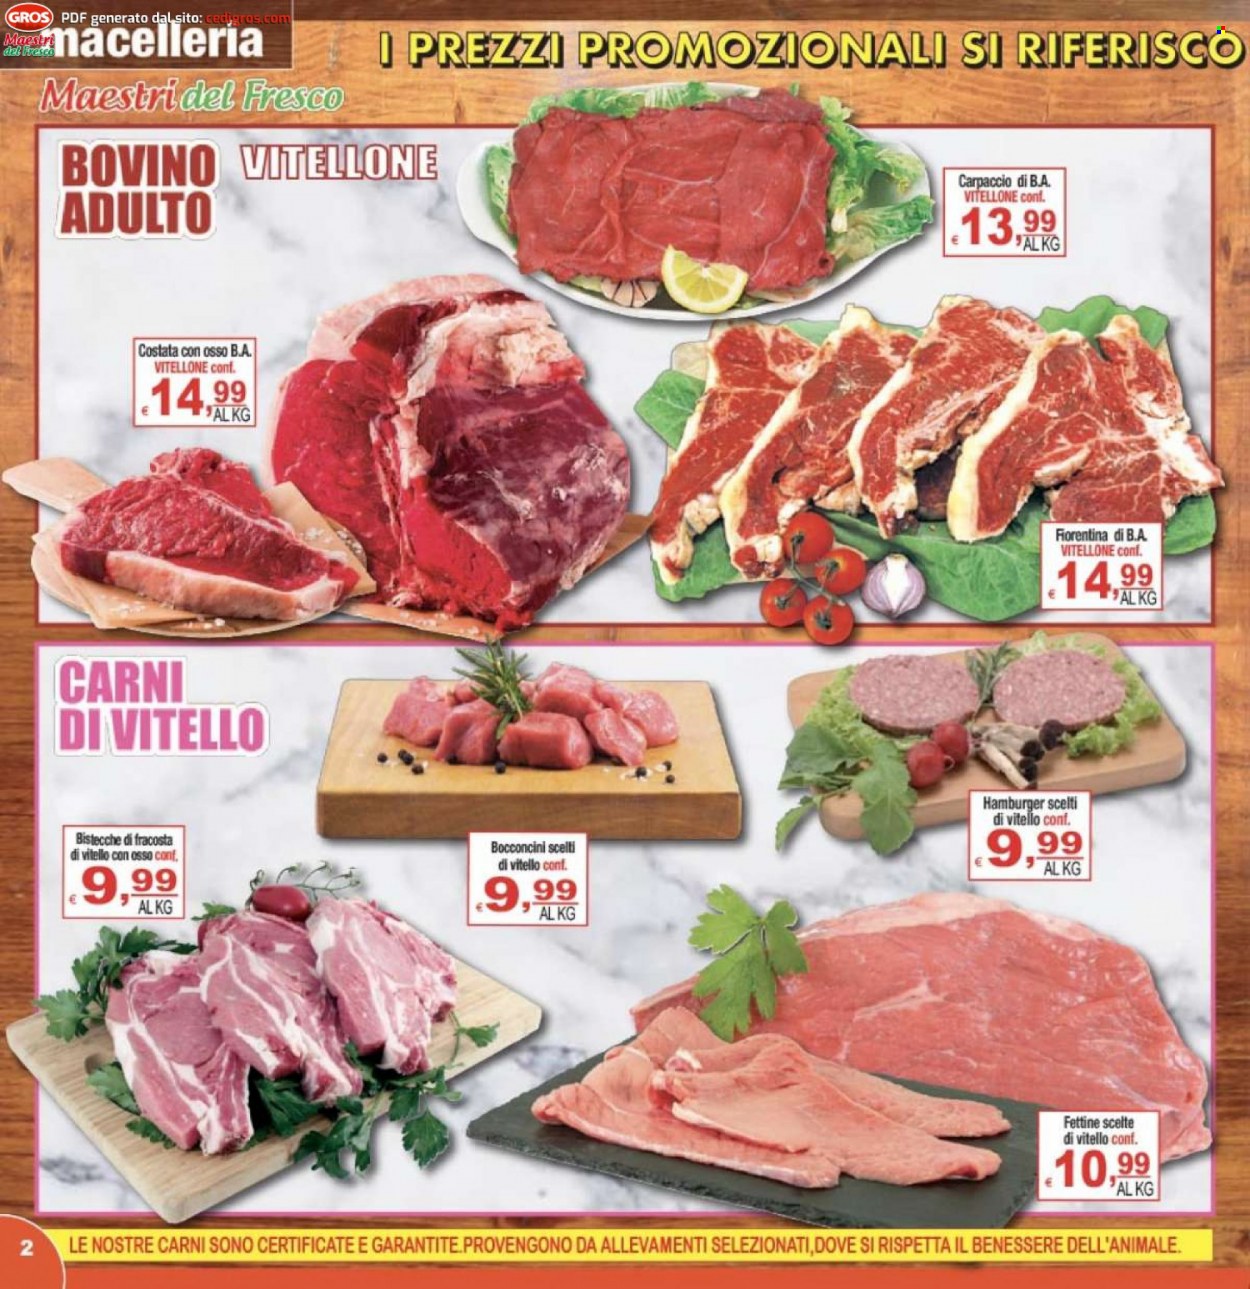 thumbnail - Volantino CTS supermercati - 31/5/2023 - 7/6/2023 - Prodotti in offerta - bocconcini, bistecca, fettine di vitello, manzo, carpaccio, vitellone, hamburger. Pagina 2.